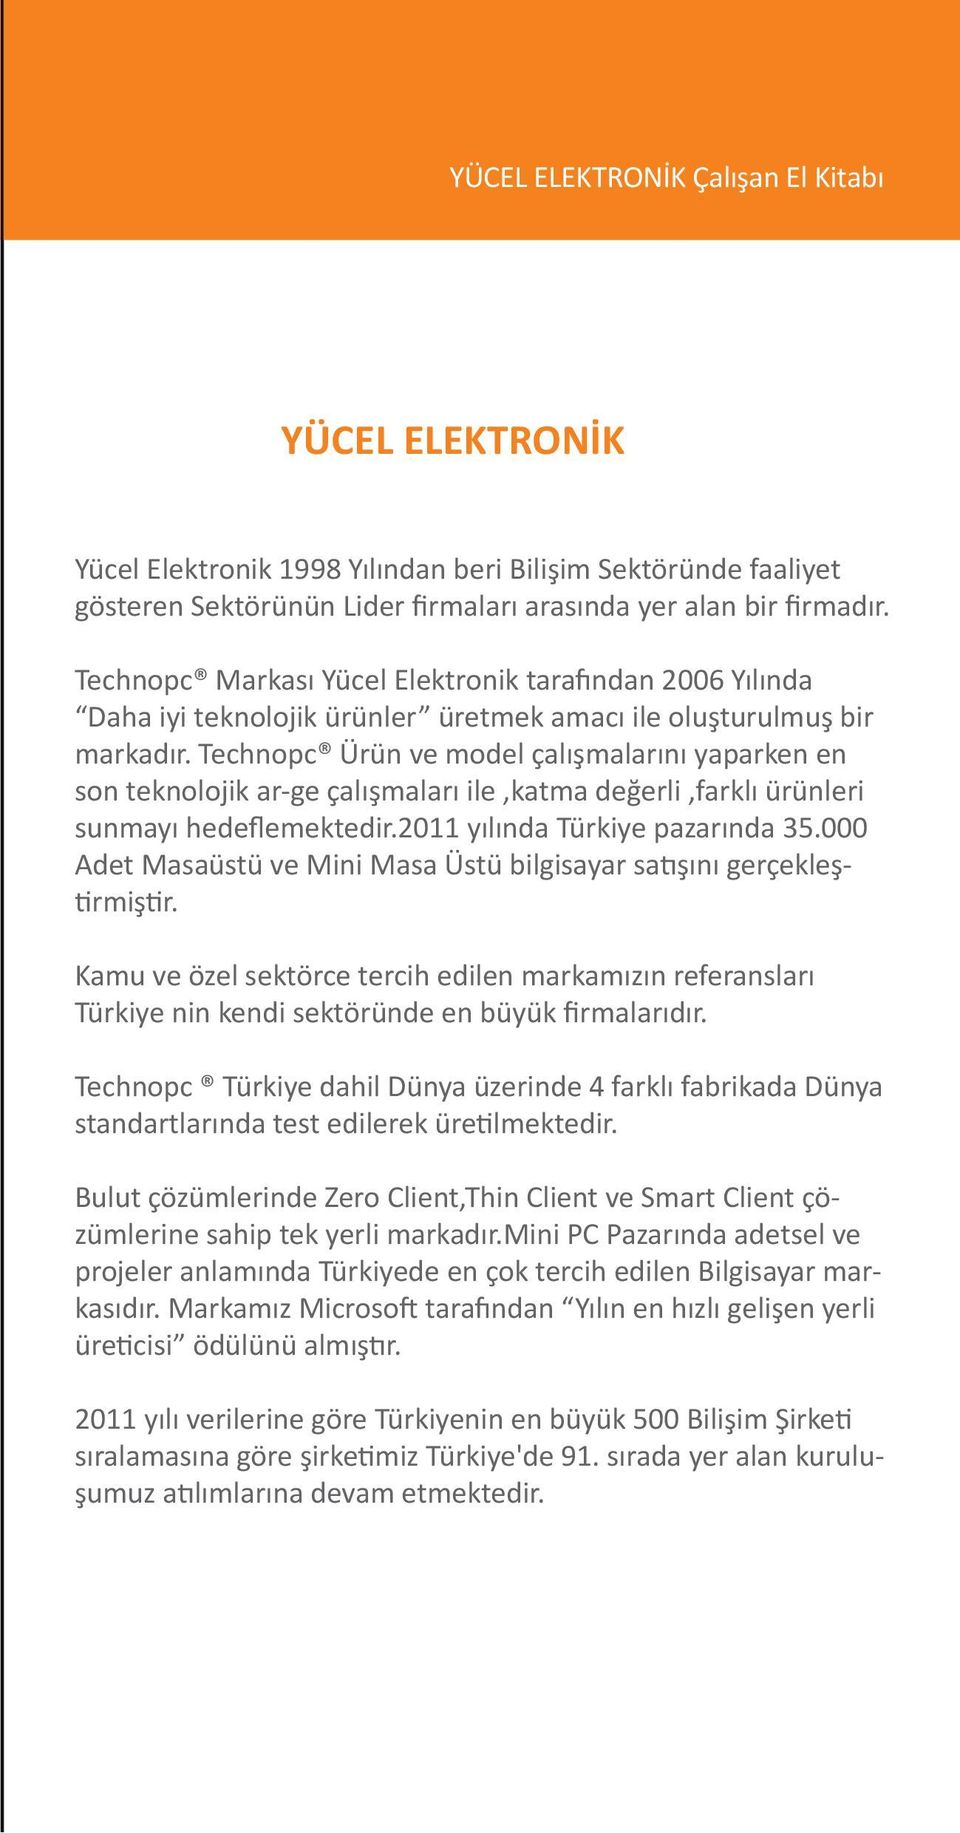 Technopc Ürün ve model çalışmalarını yaparken en son teknolojik ar-ge çalışmaları ile,katma değerli,farklı ürünleri sunmayı hedeflemektedir.2011 yılında Türkiye pazarında 35.